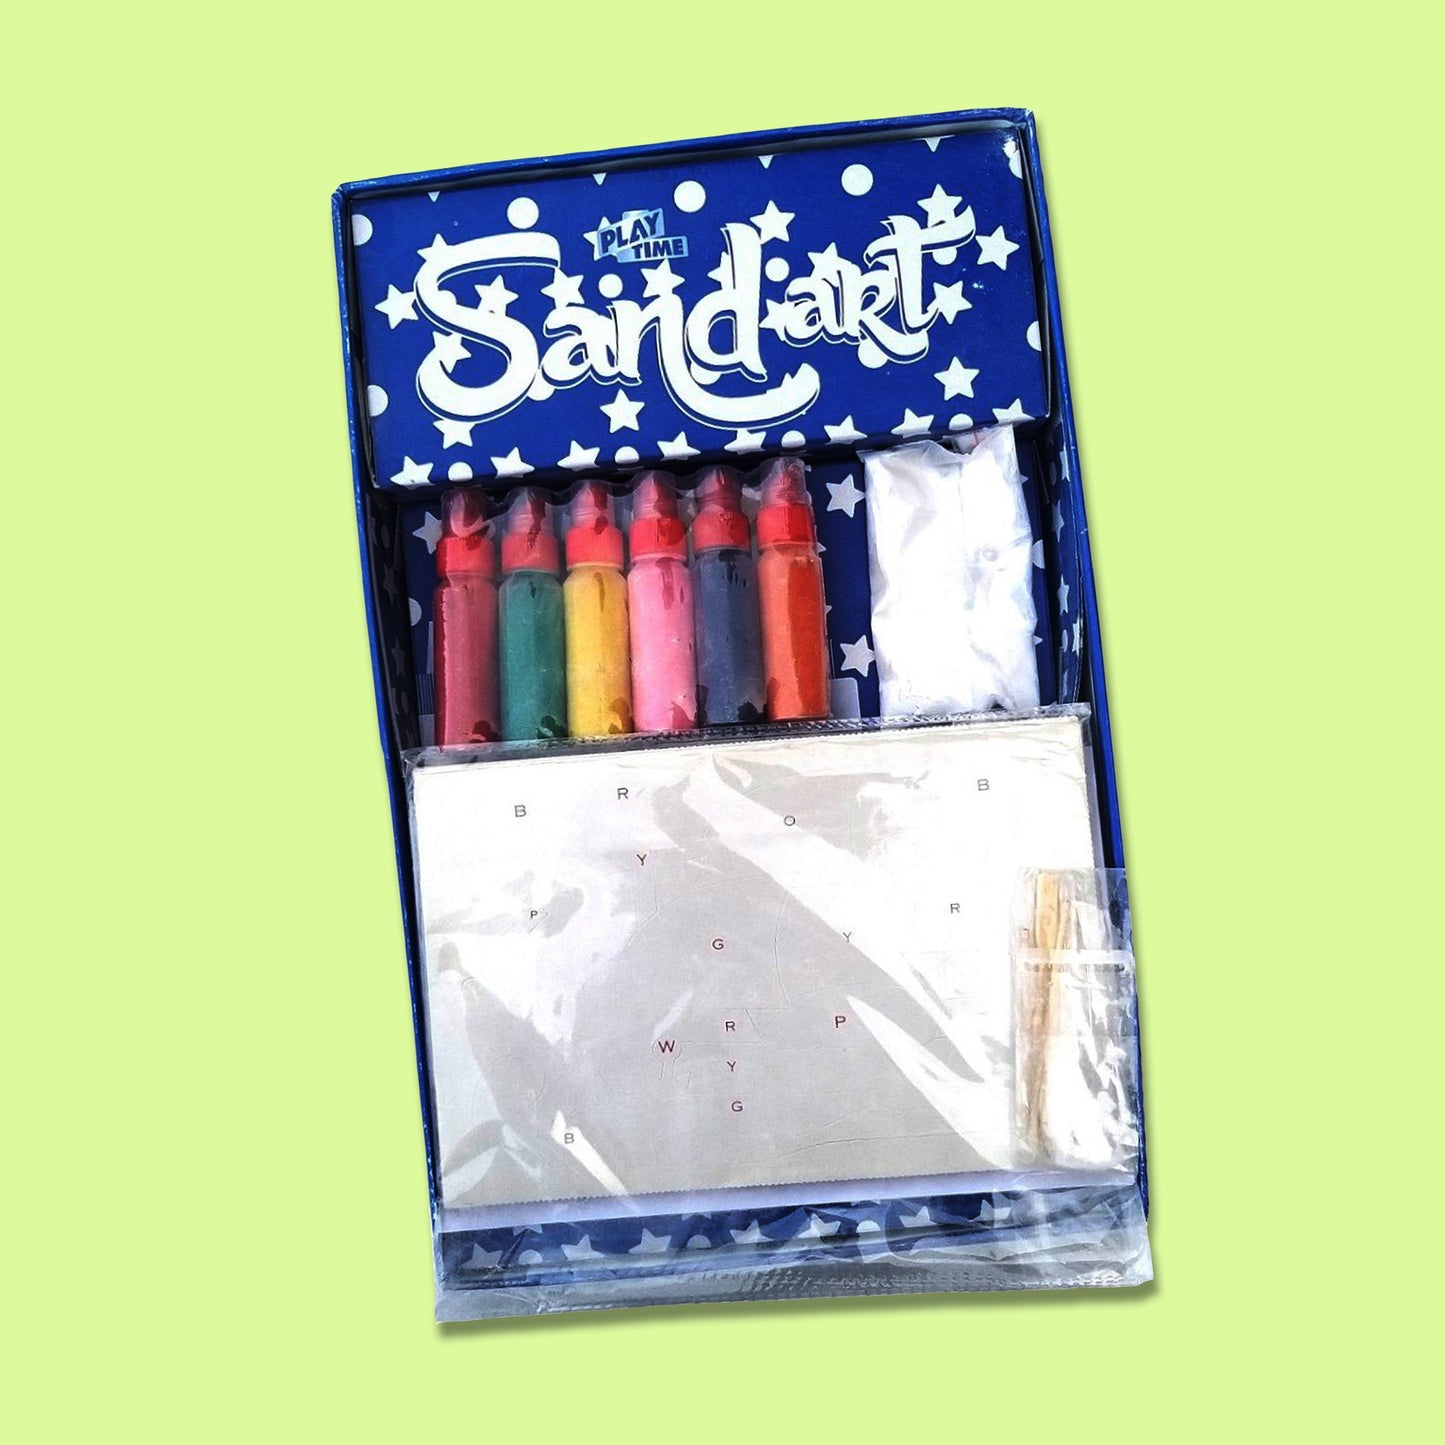 Sand Art Kit, 4 in 1 Sand Art Board Game For Kids